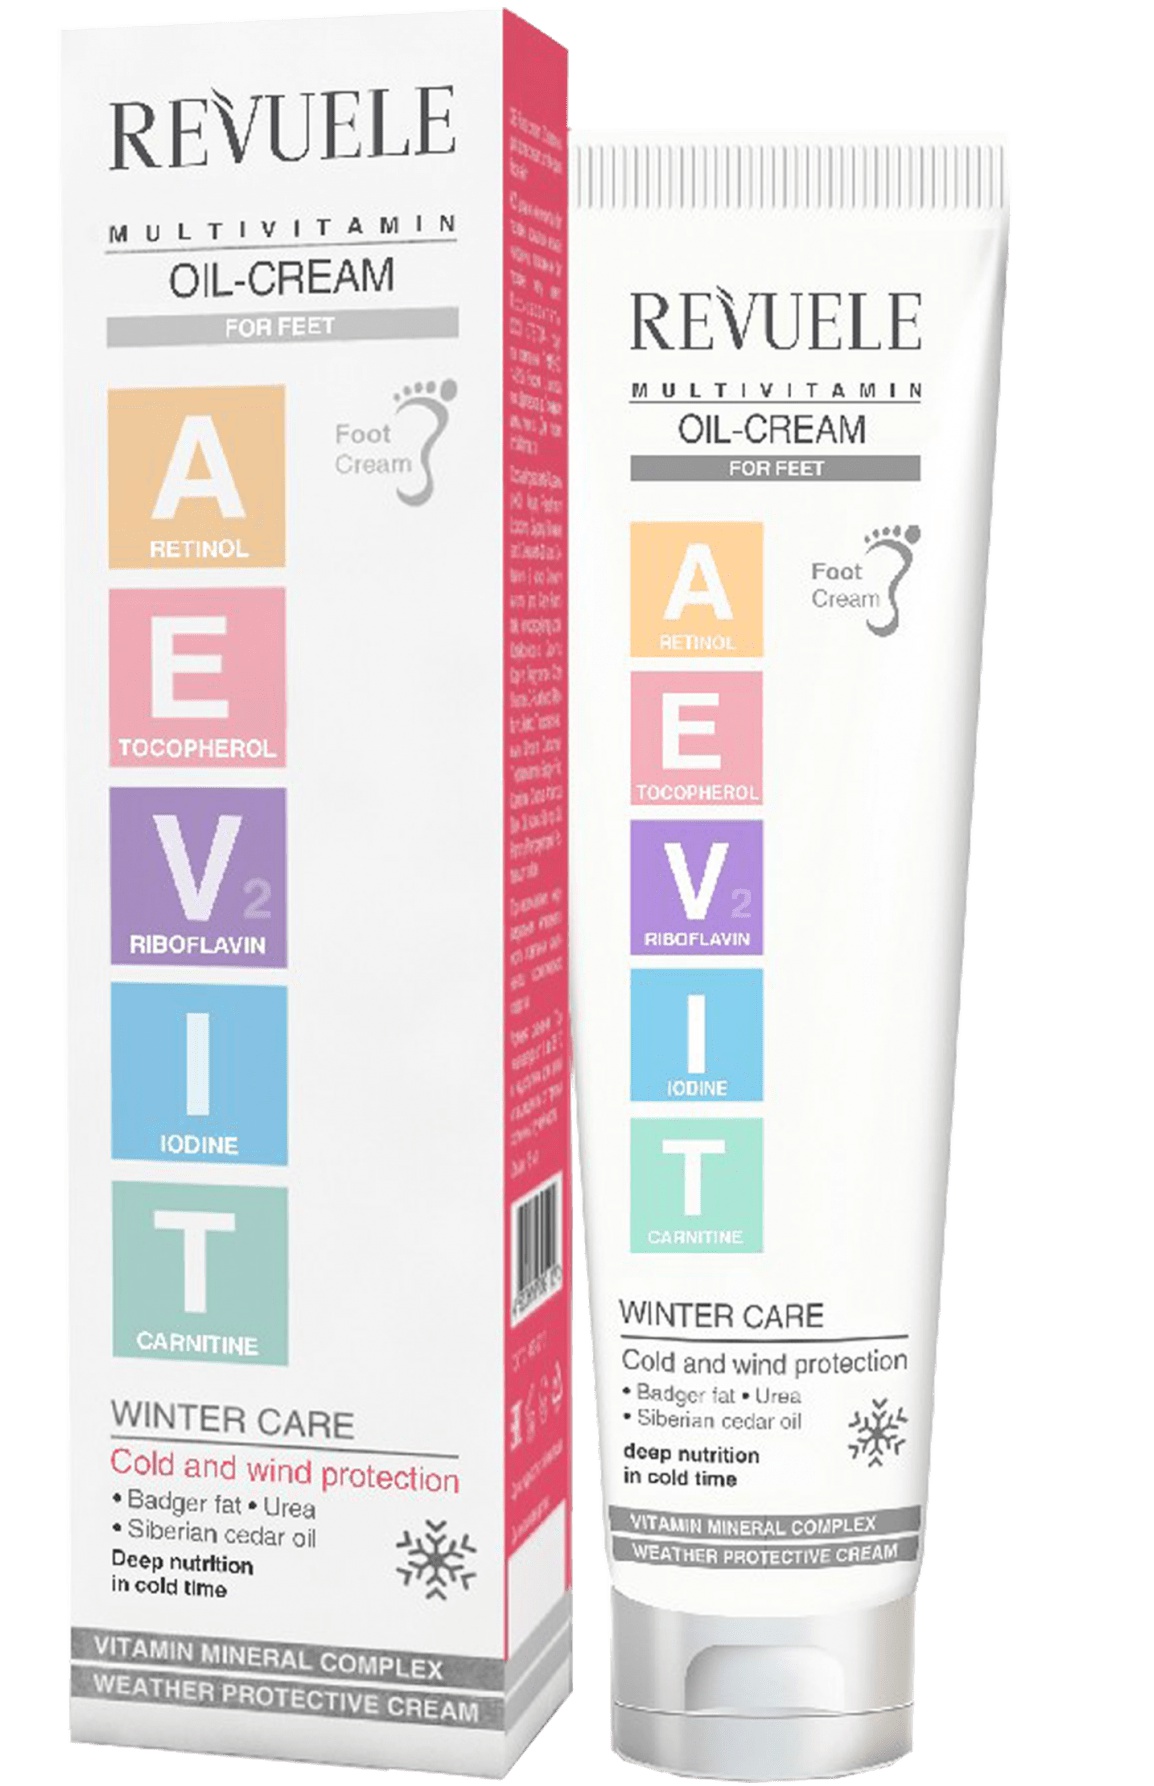 Revuele AEVIT Multivitamin Oil-Cream For Feet